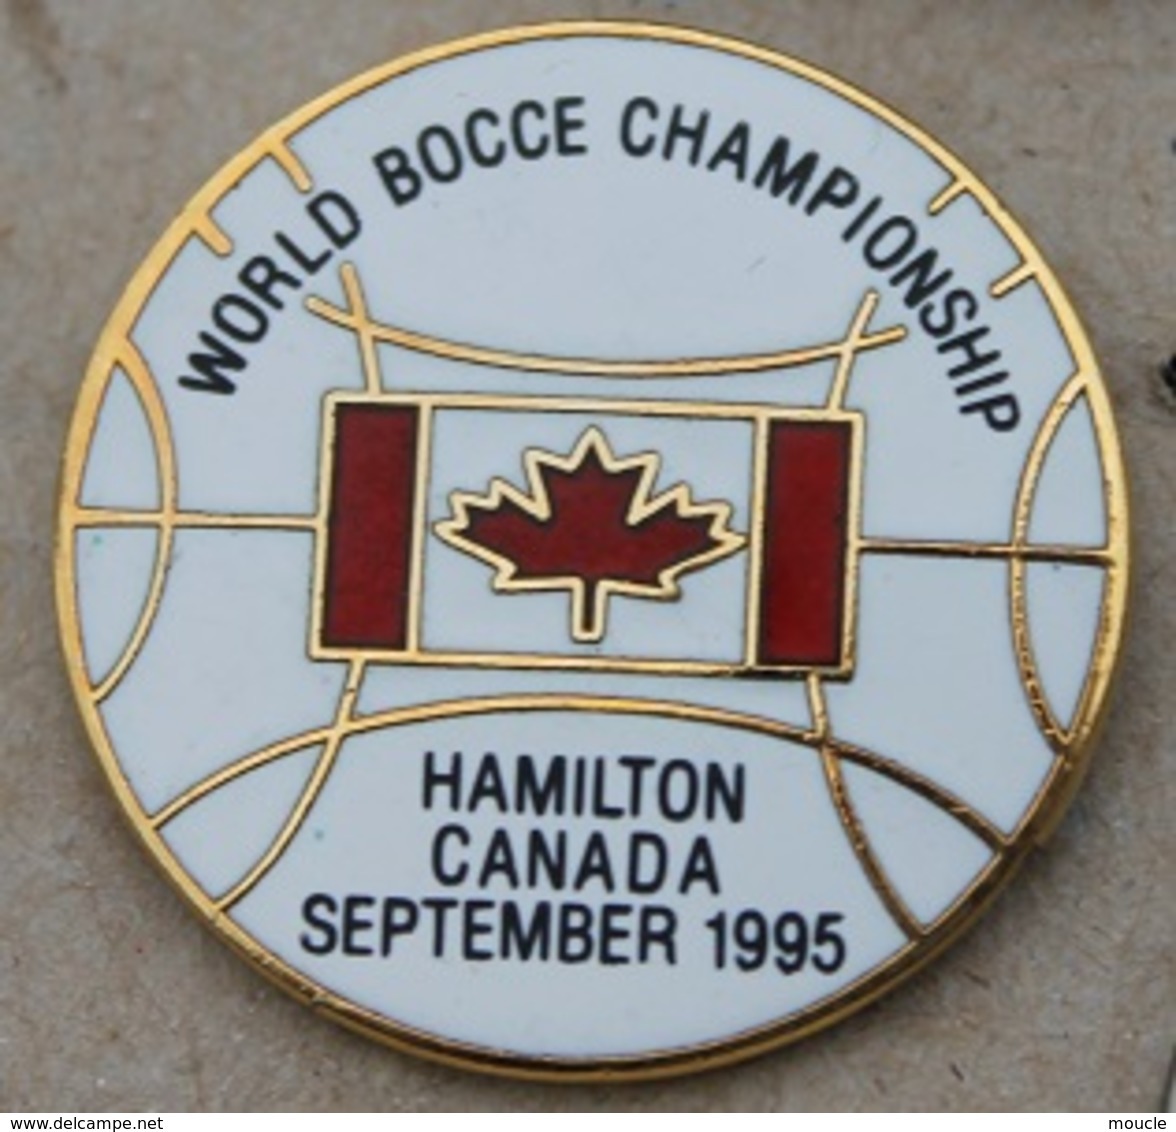 WORLD BOCCE CHAMPIONSHIP - HAMILTON CANADA SEPTEMBER 1995 - FEUILLE D'ERABLE - BOULE - PETANQUE -      (25) - Bowls - Pétanque